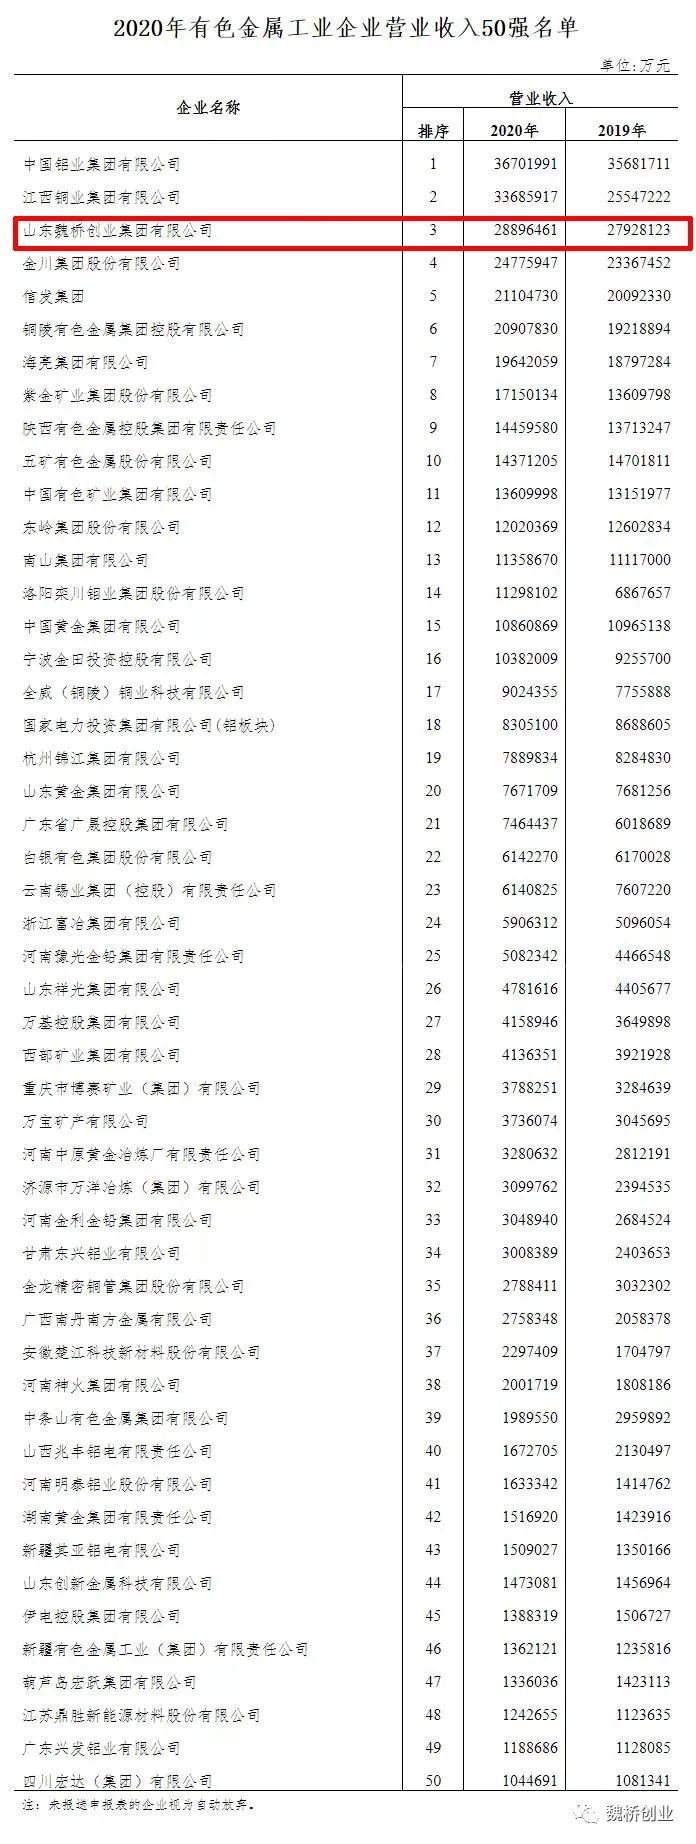 魏桥创业入围2020年中国有色金属工业企业营业收入50强